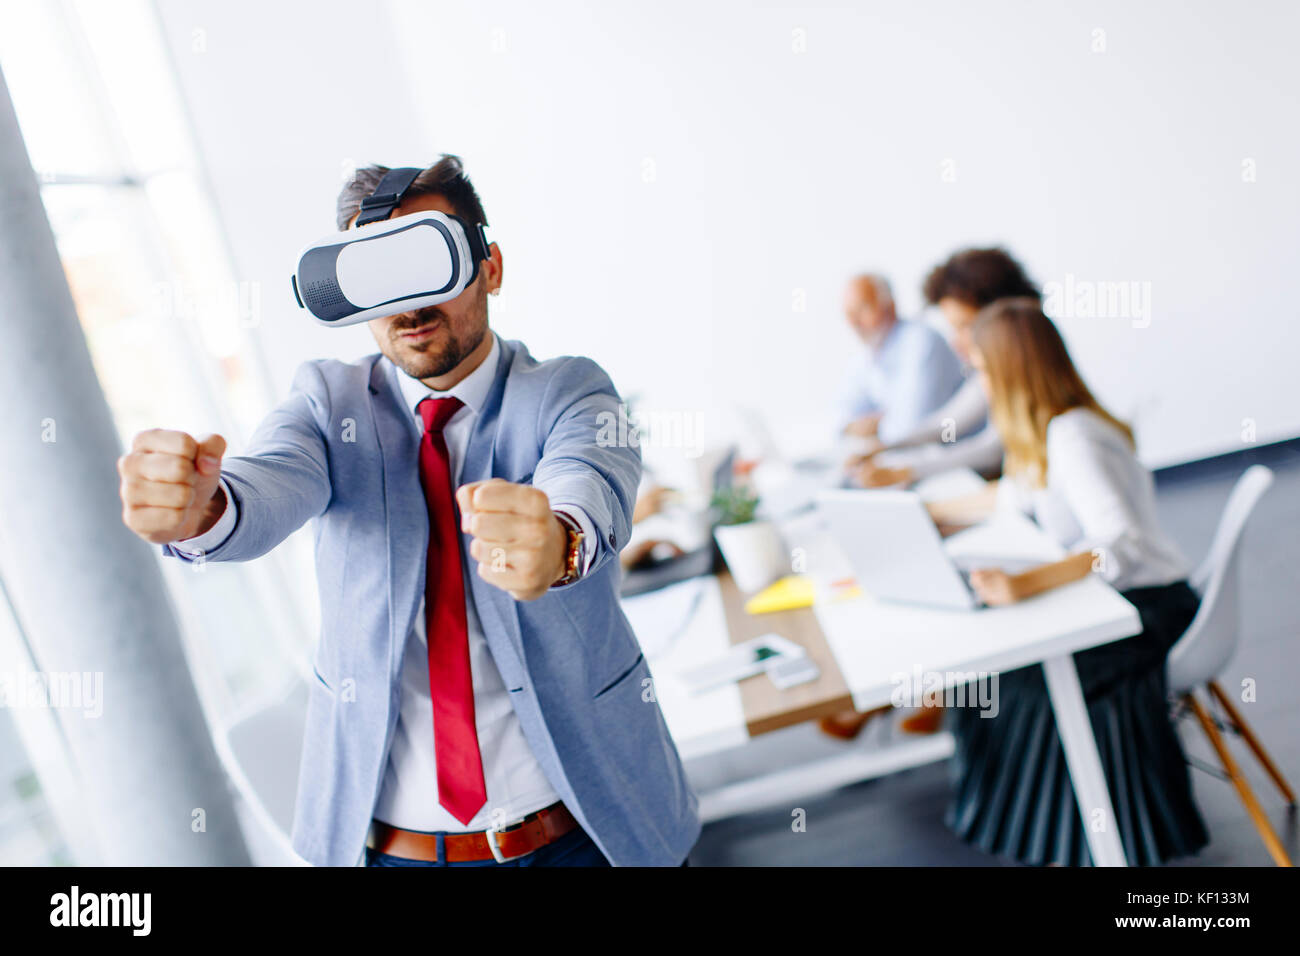 Homme d'affaires moderne avec un casque de réalité virtuelle dans le bureau s'amusant Banque D'Images